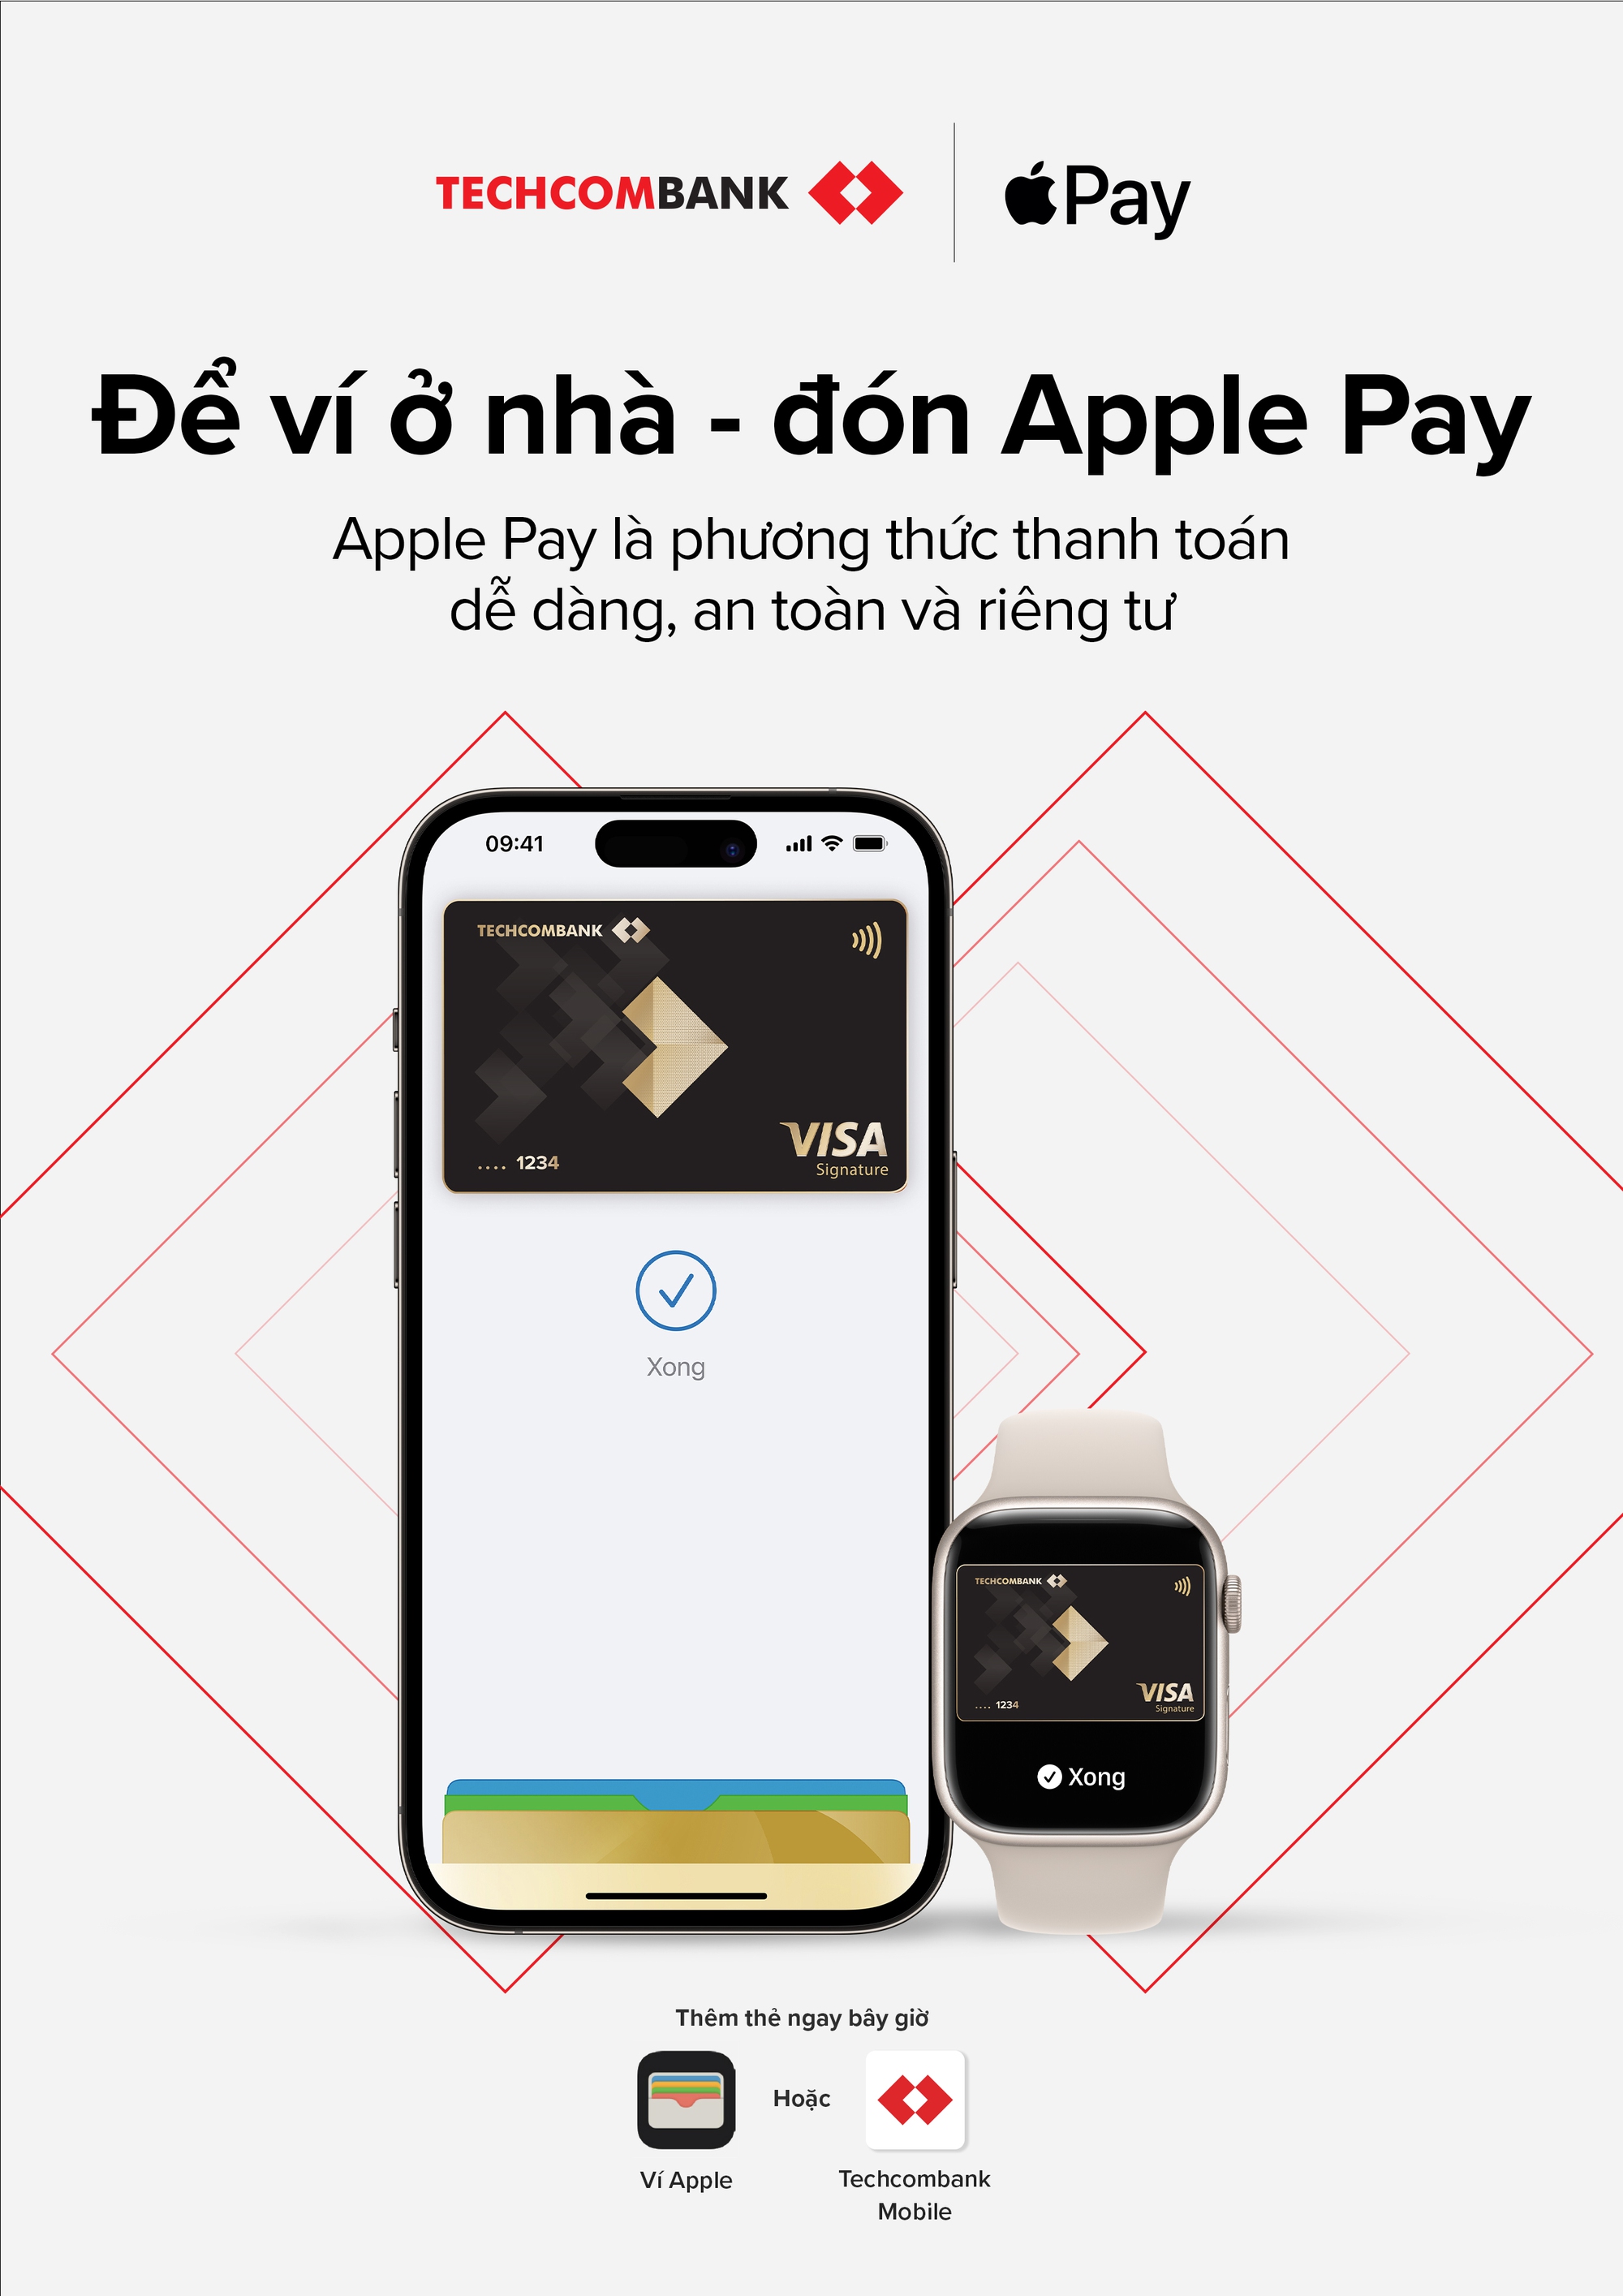 Techcombank giới thiệu Apple Pay đến khách hàng - Ảnh 1.